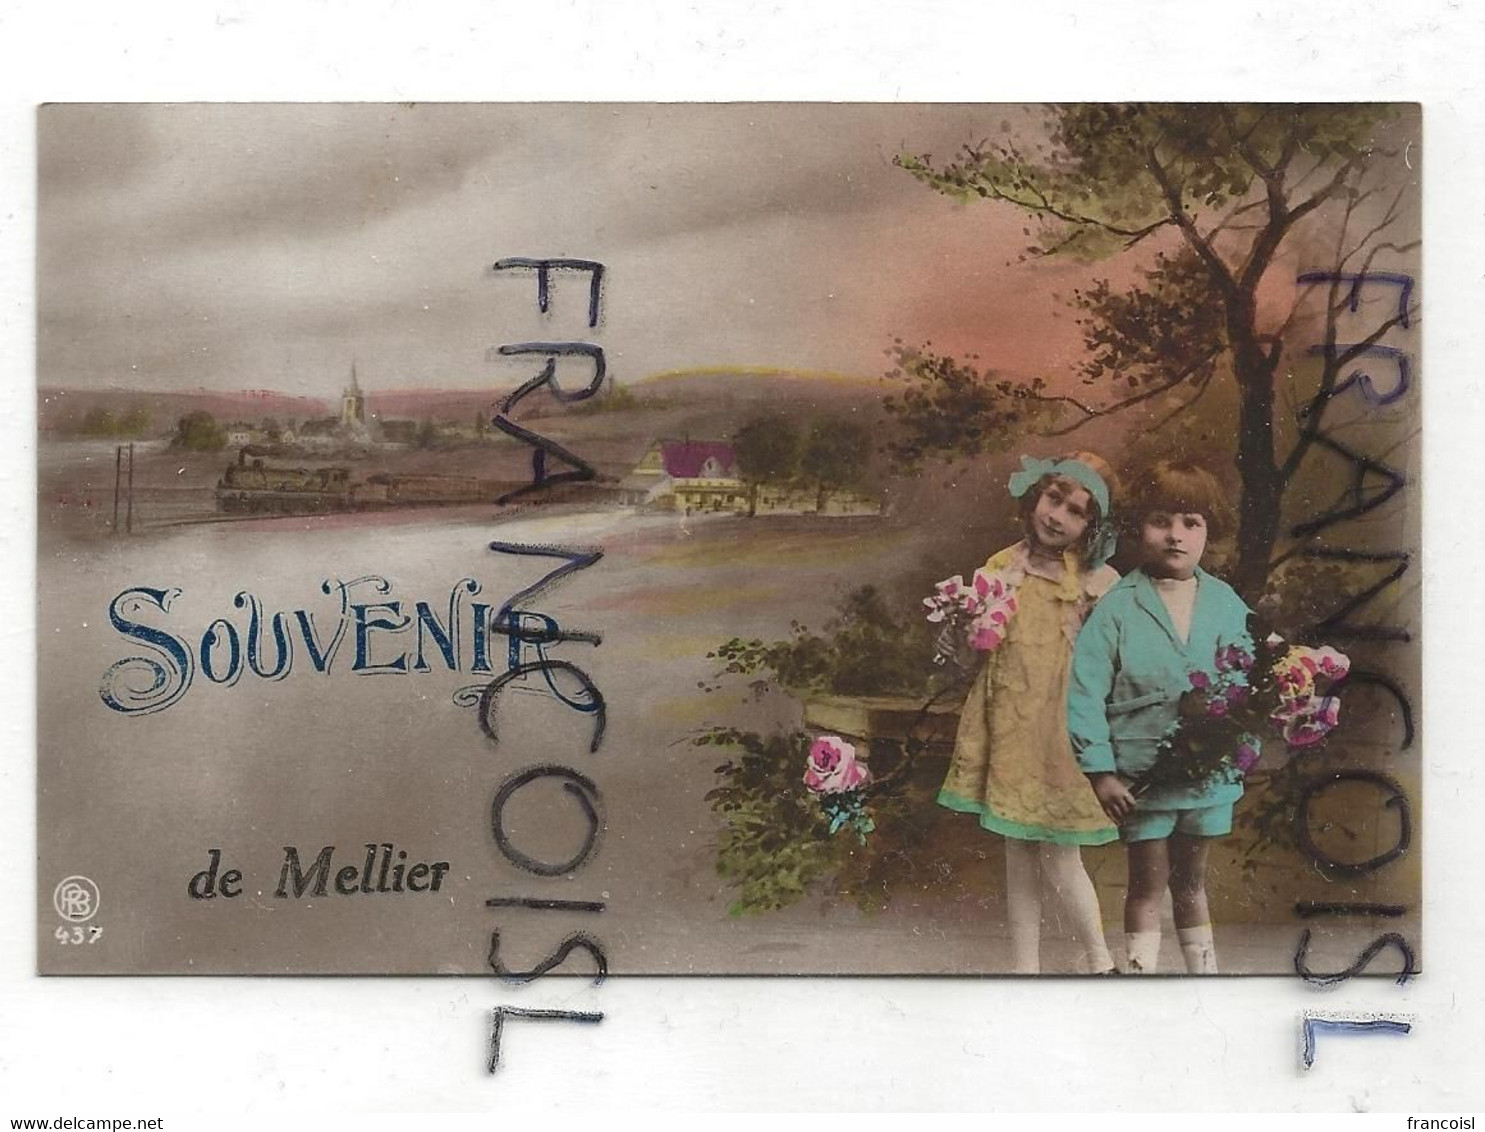 Souvenir De Mellier. Photographie Montage. Deux Enfants, Roses, Train Vapeur - Léglise